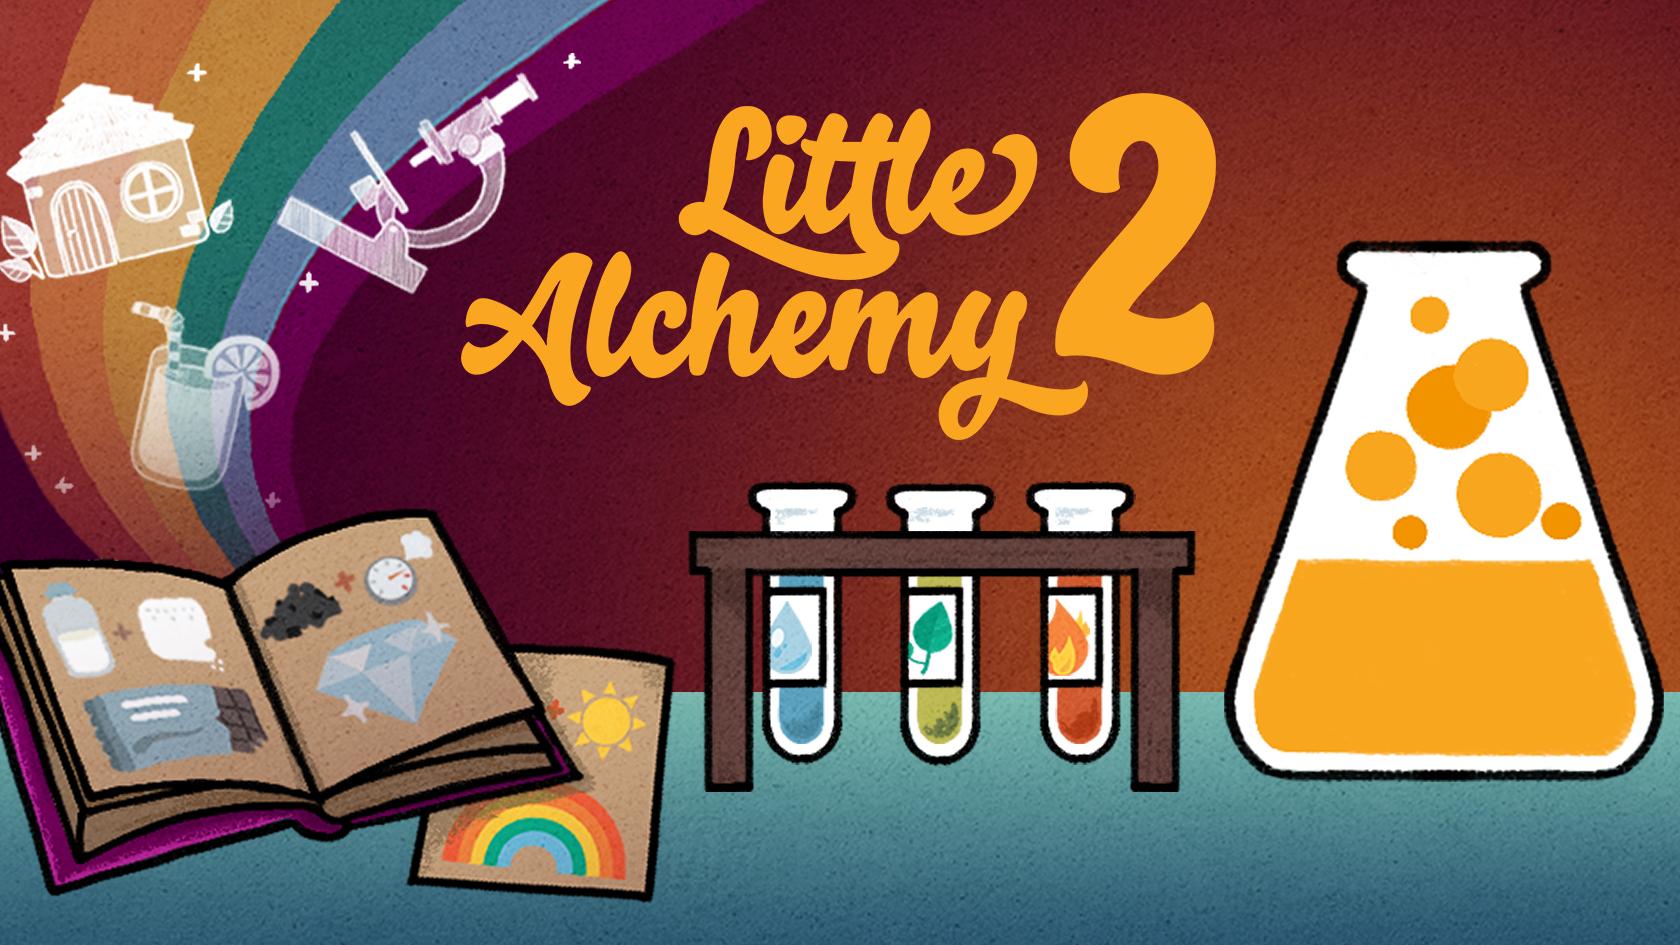 Little Alchemy 2 1.2.11 Screenshot 18